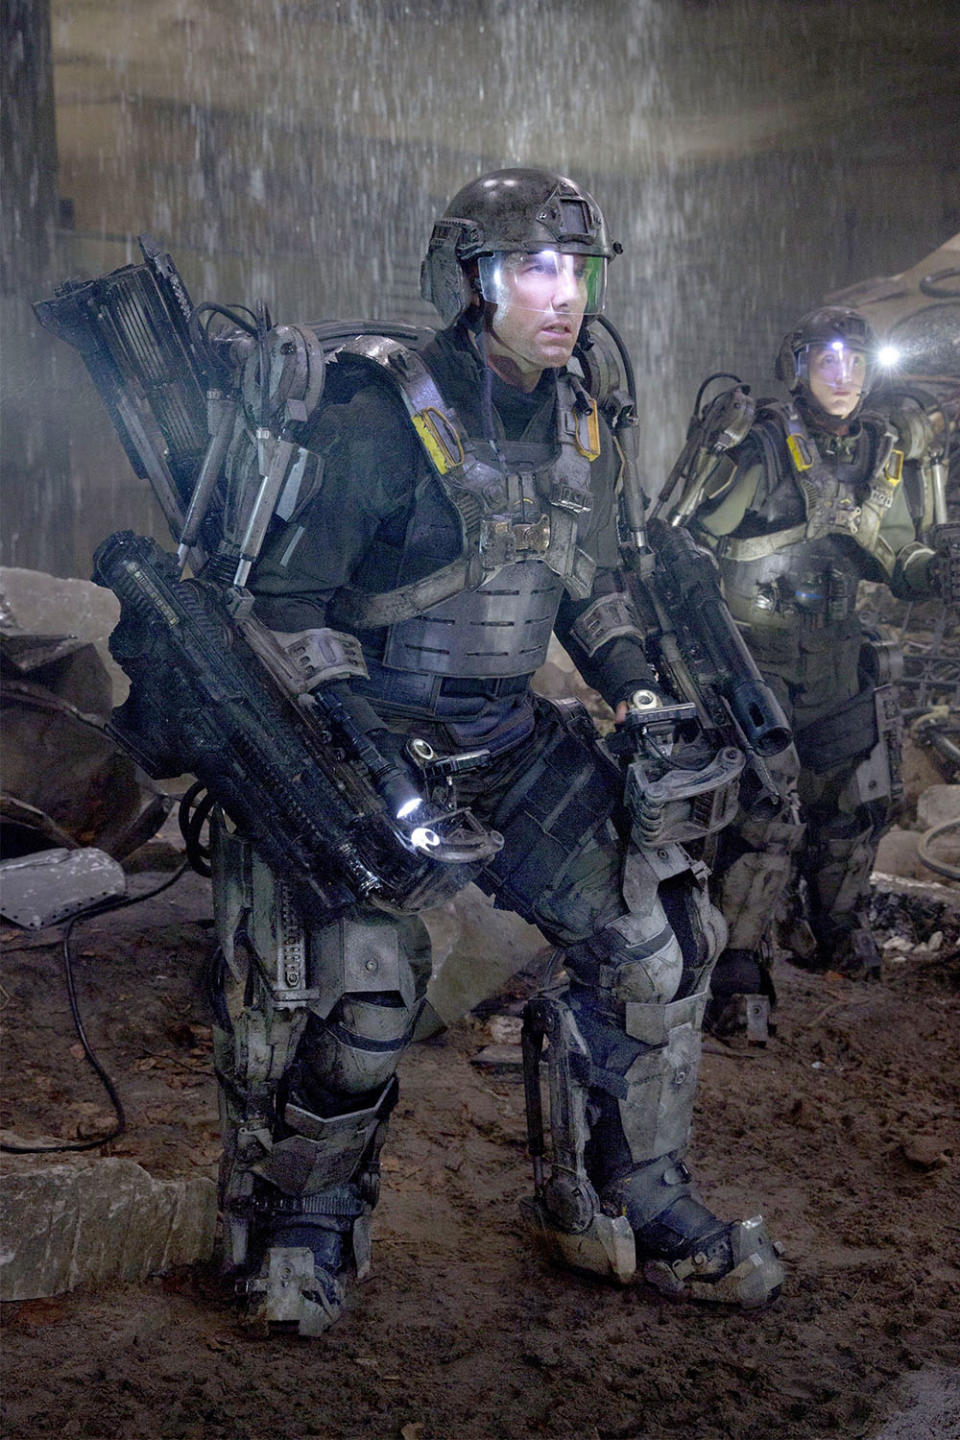 Tom Cruise's Exoskeleton Armor in Edge of Tomorrow